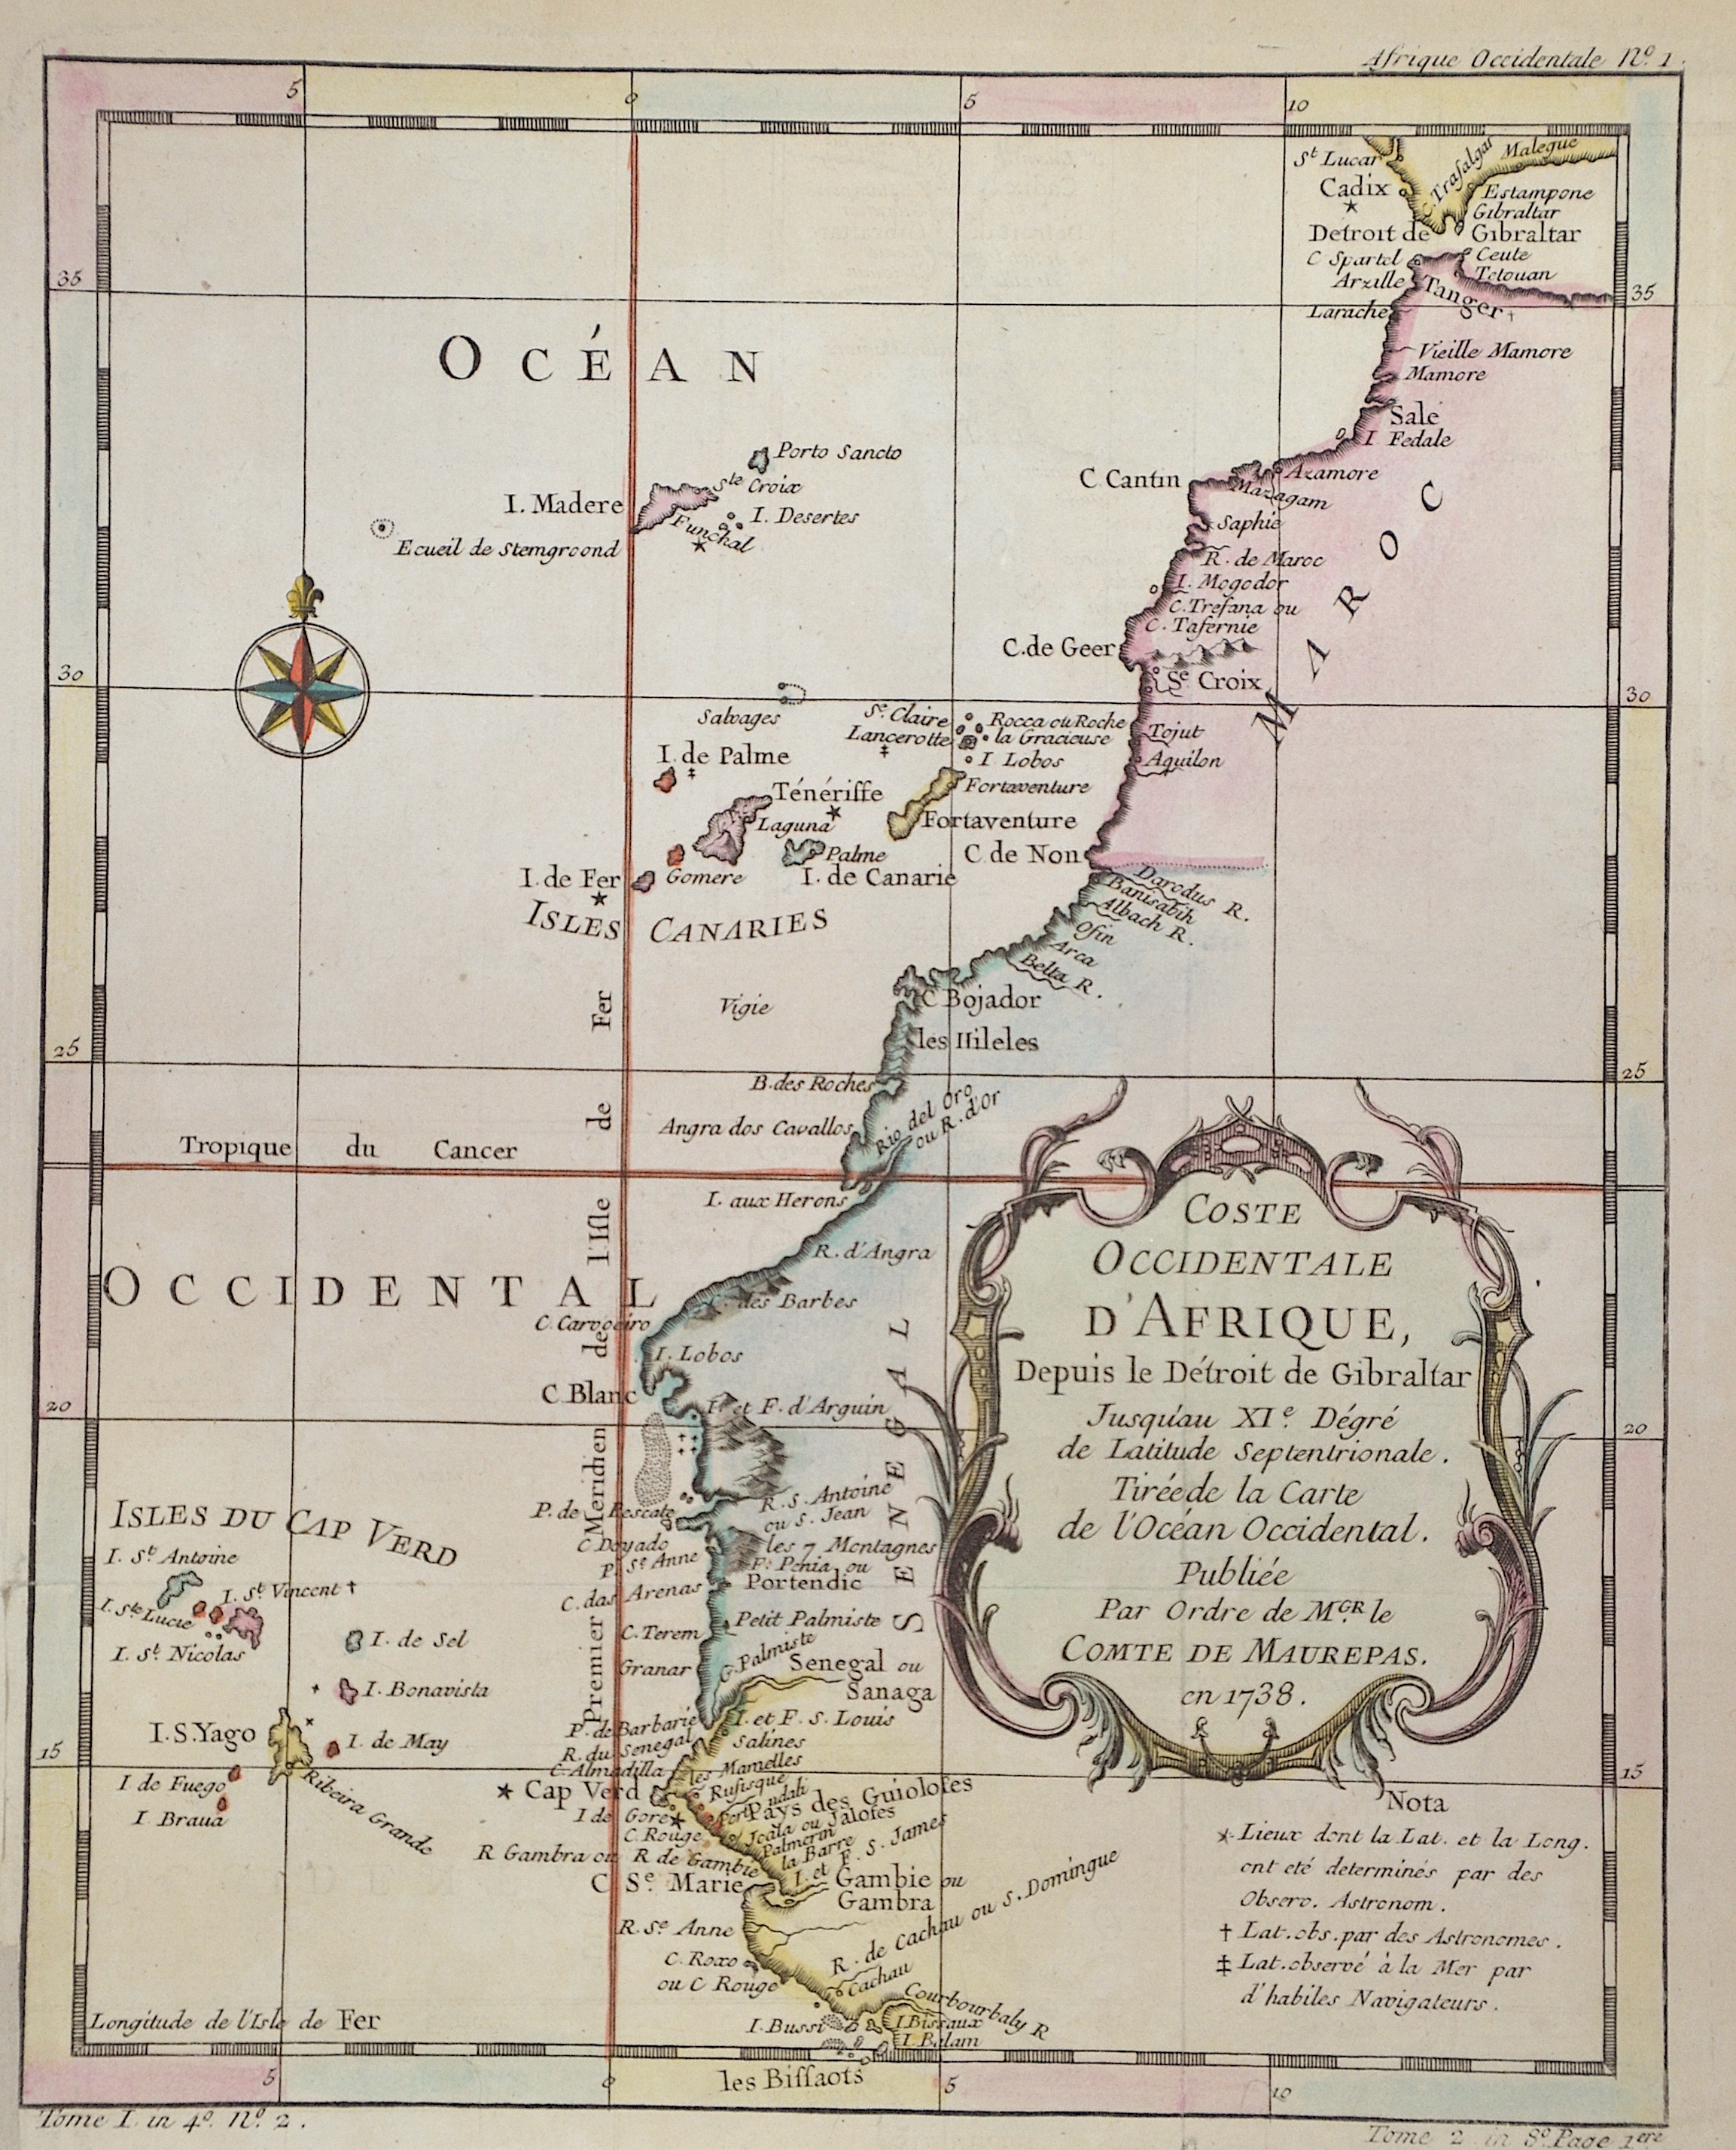 Maurepas, Comte de Jean-Frédéric Coste occidentale D’Afrique, Depuis le Detroit de Gibraltar.